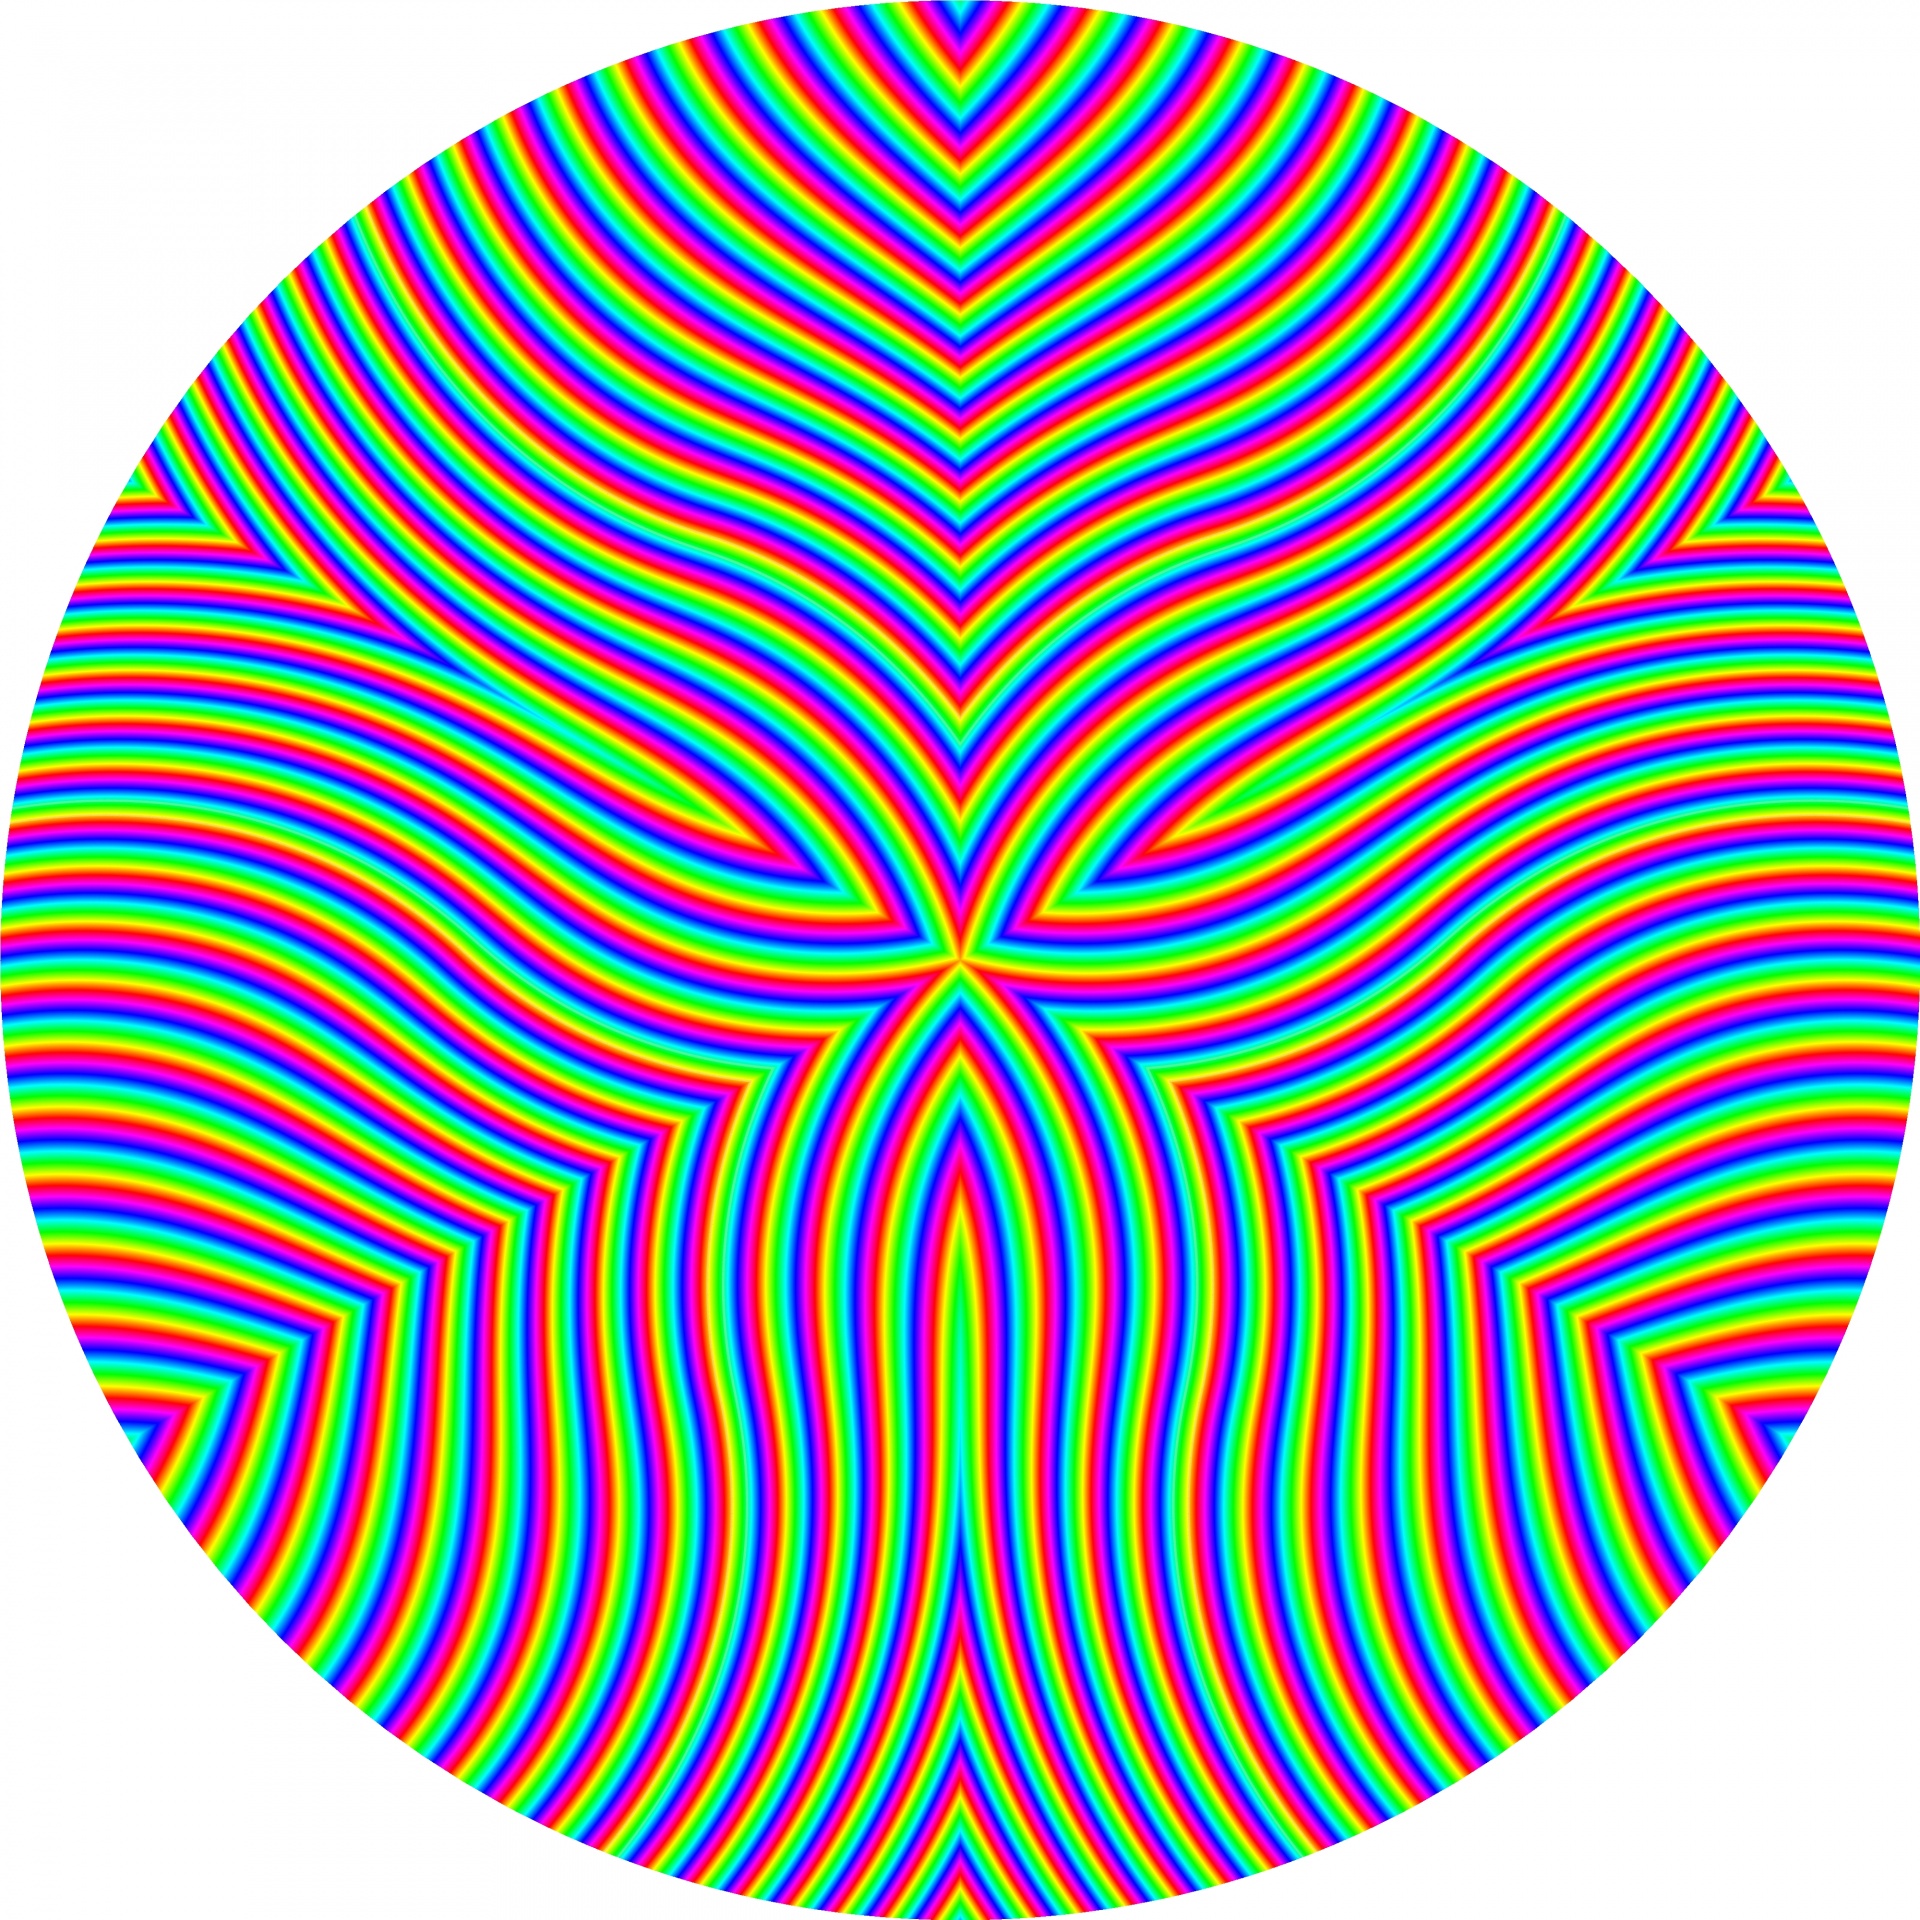 illusion of kaleidoscopic circle on white background